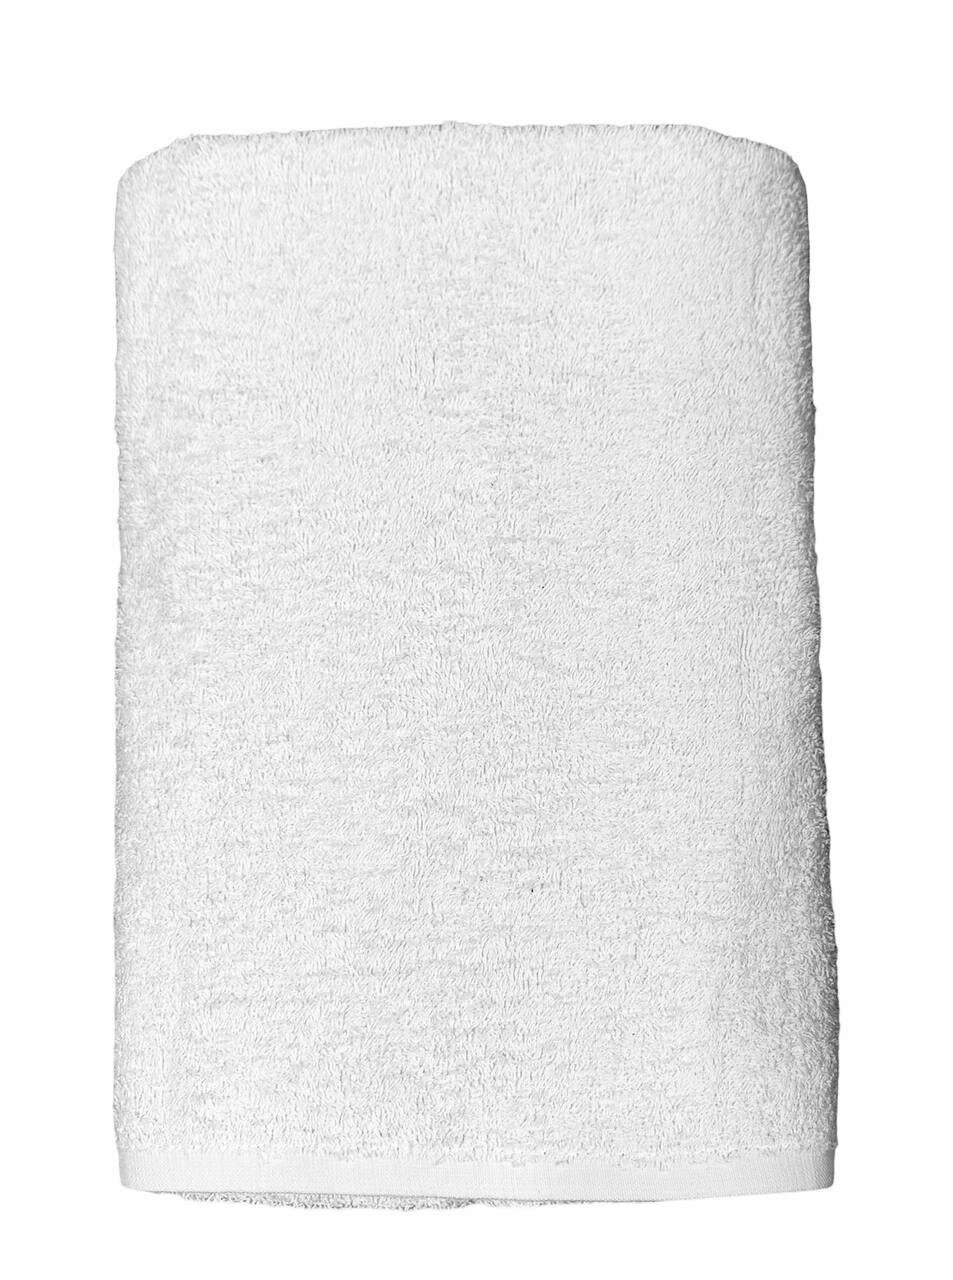 Полотенце белое банное, махровое, хлопок, 70x140 см, 450 г/м² - фотография № 2